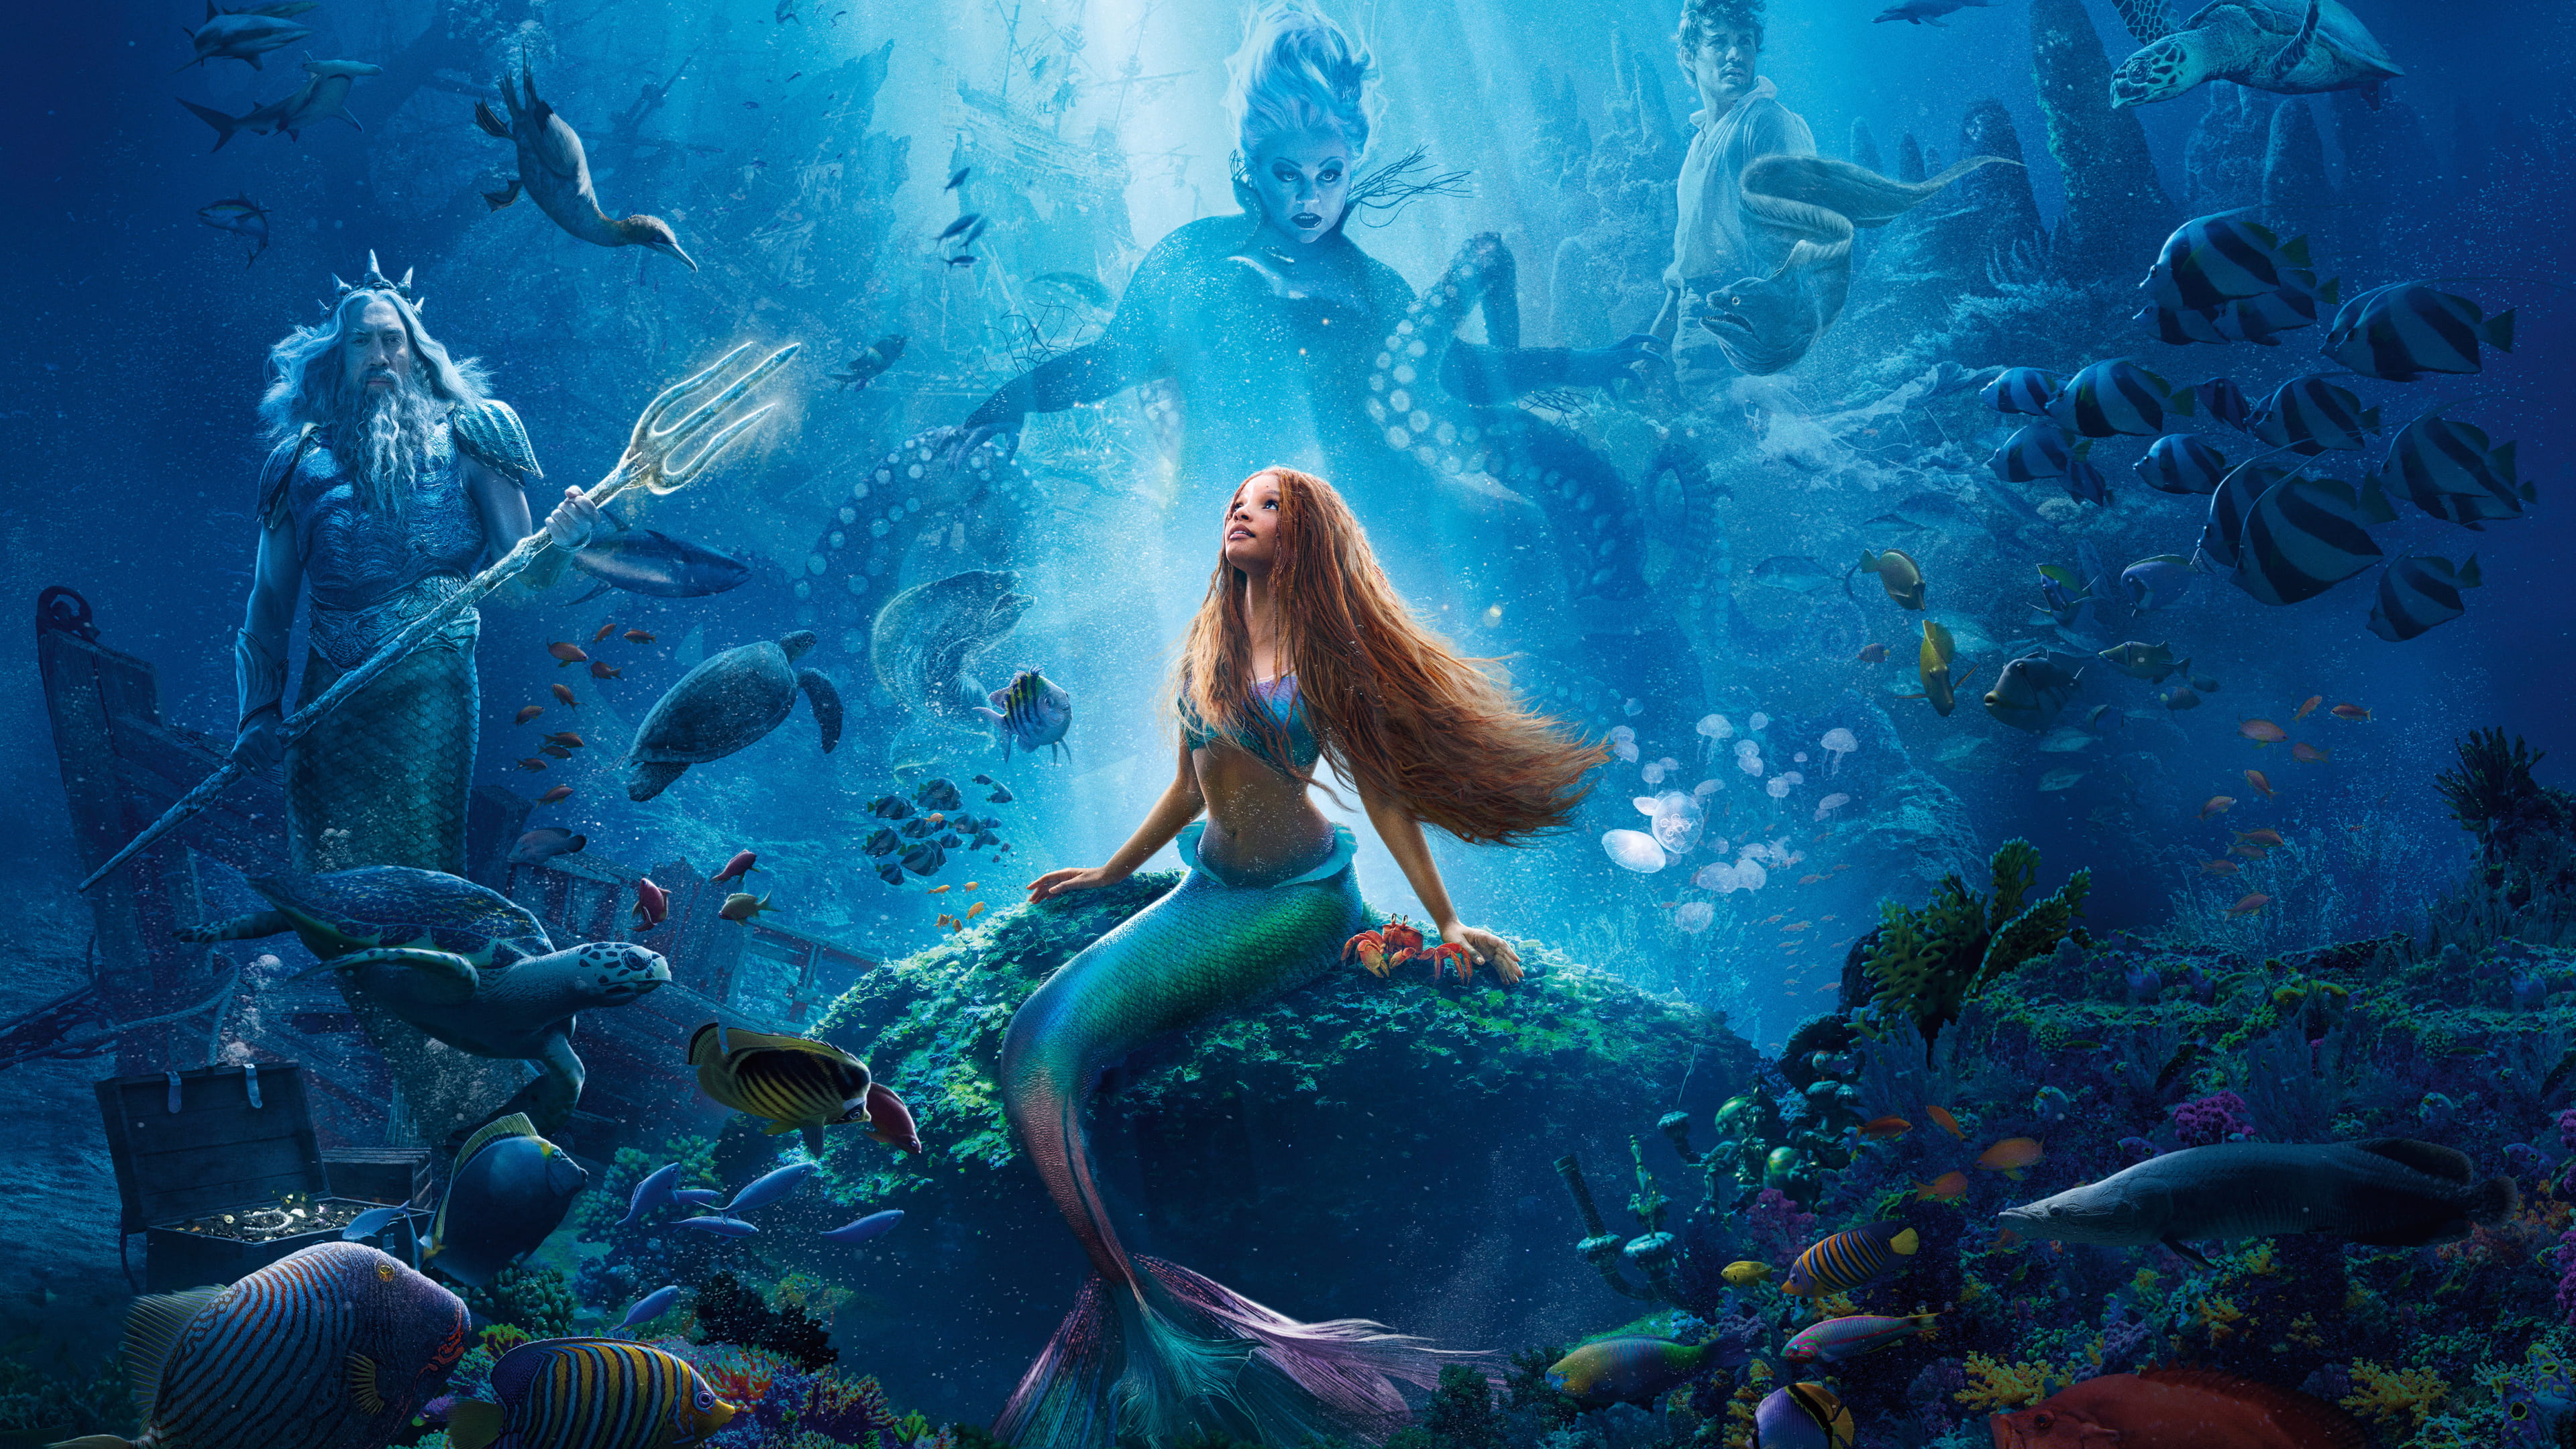 The Little Mermaid Movie 4K Wallpaper Pixground Download High